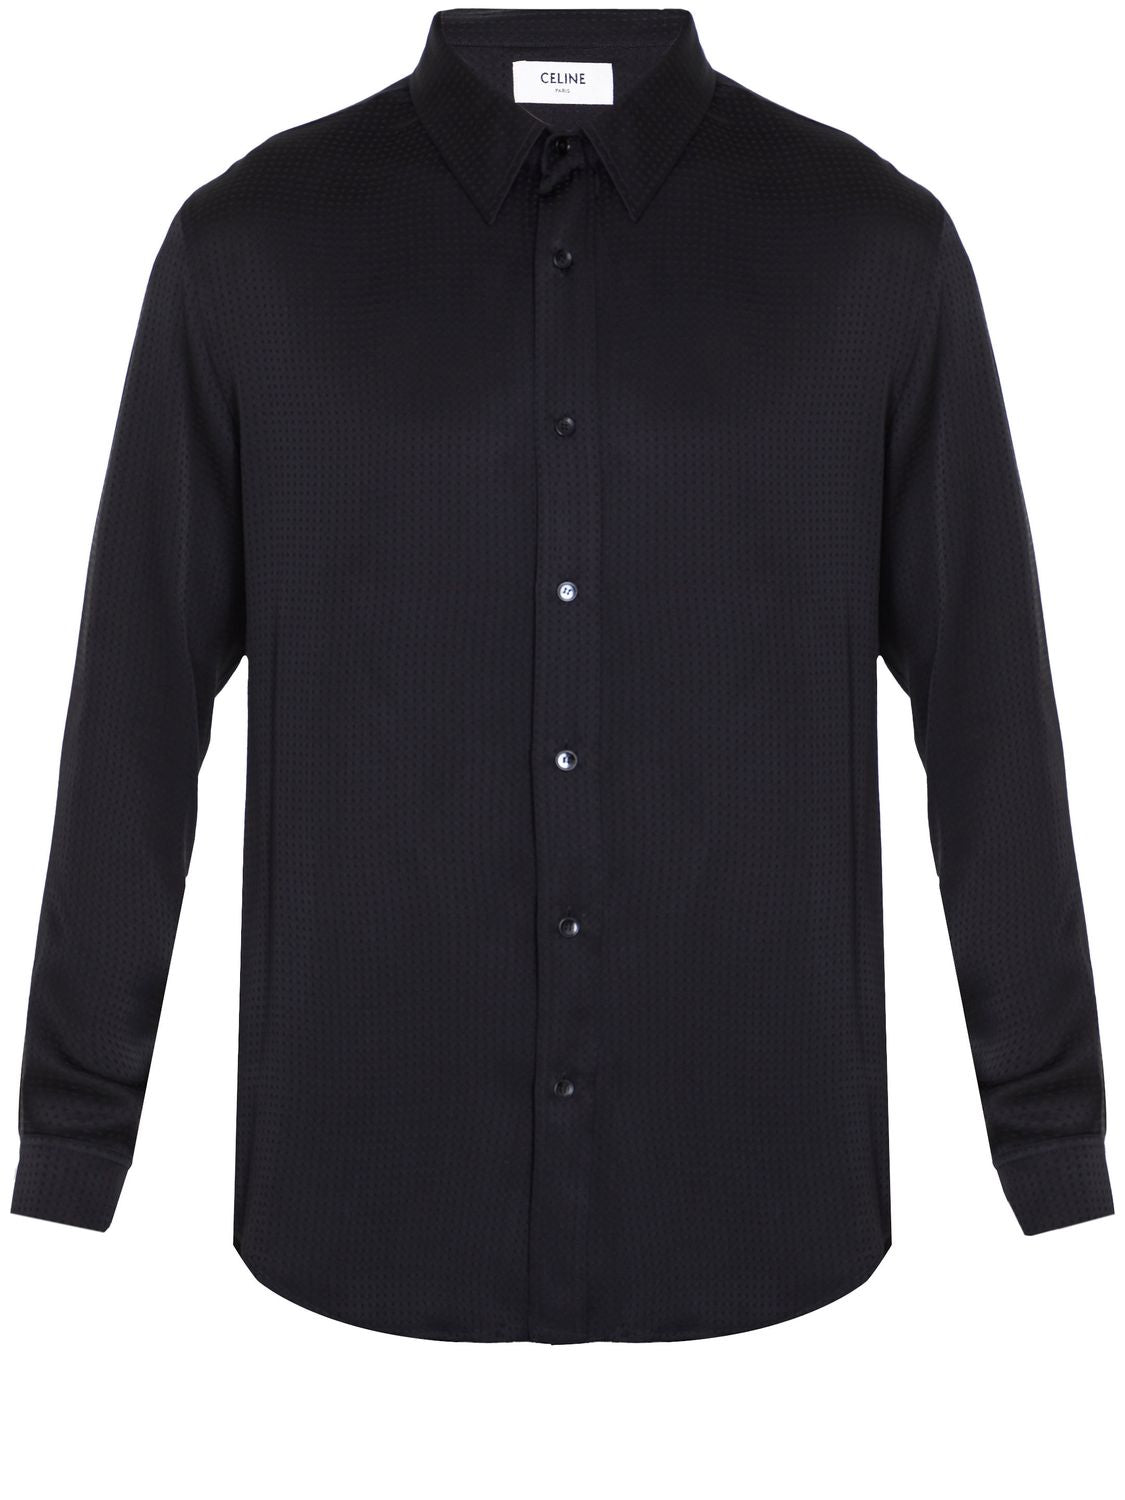 男士黑色絲質波點長袖襯衫 - FW23系列